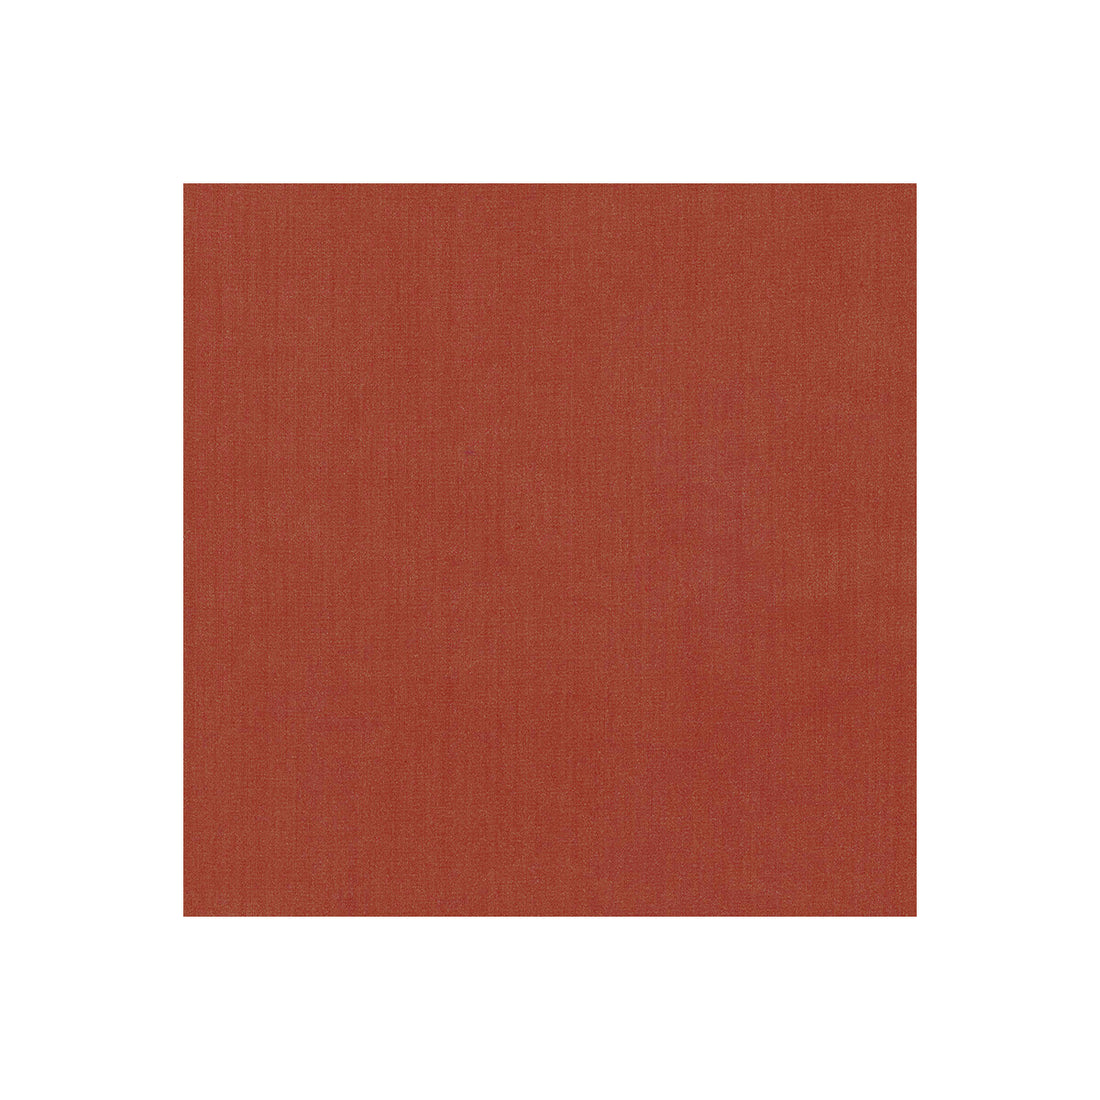 Kravet Basics fabric in 35916-24 color - pattern 35916.24.0 - by Kravet Basics